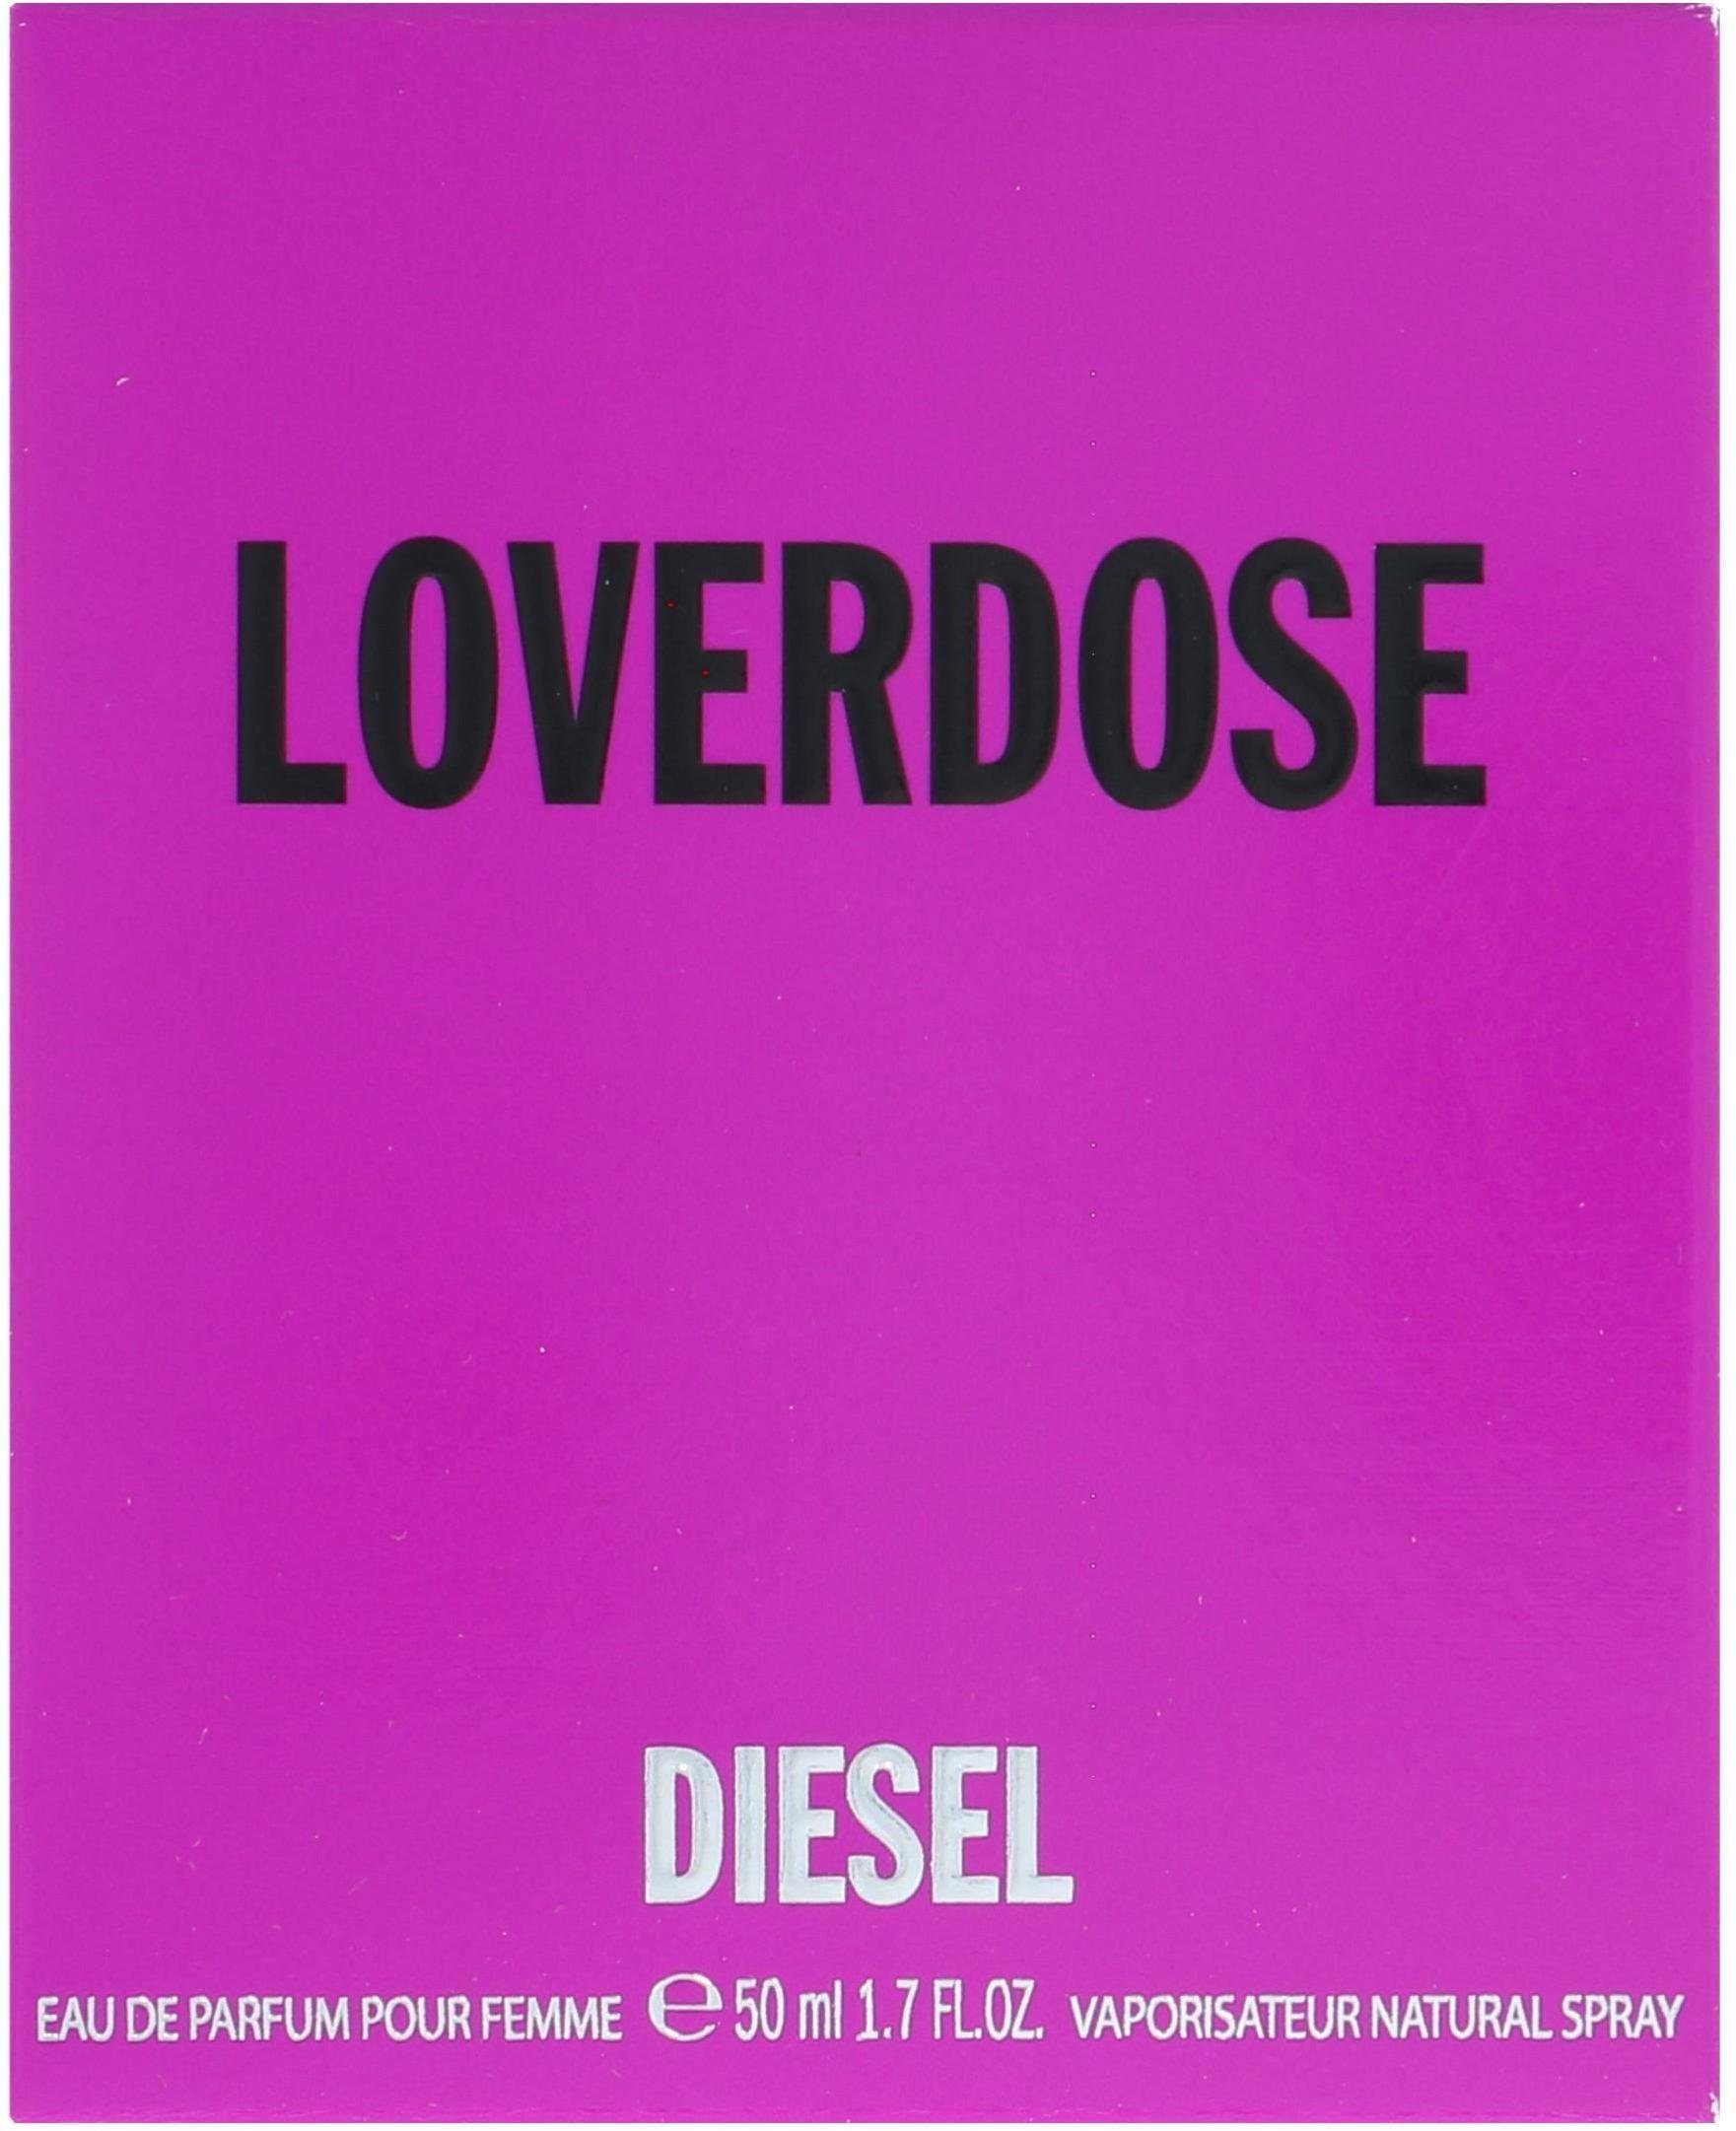 Parfum Loverdose Eau de Diesel